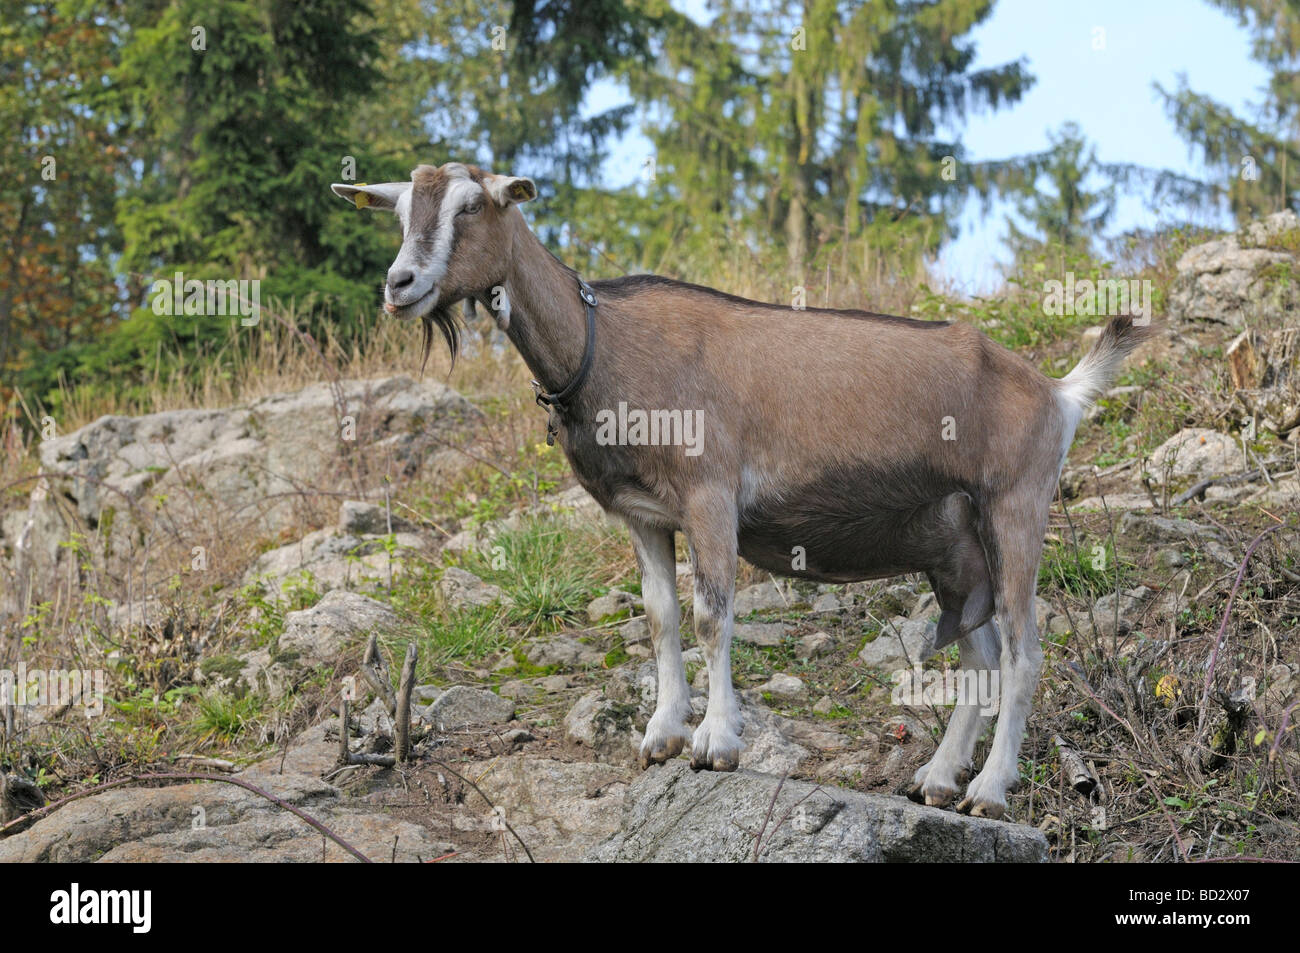 La chèvre, chèvre de Thuringe (Capra aegagrus hircus) debout sur un rocher Banque D'Images